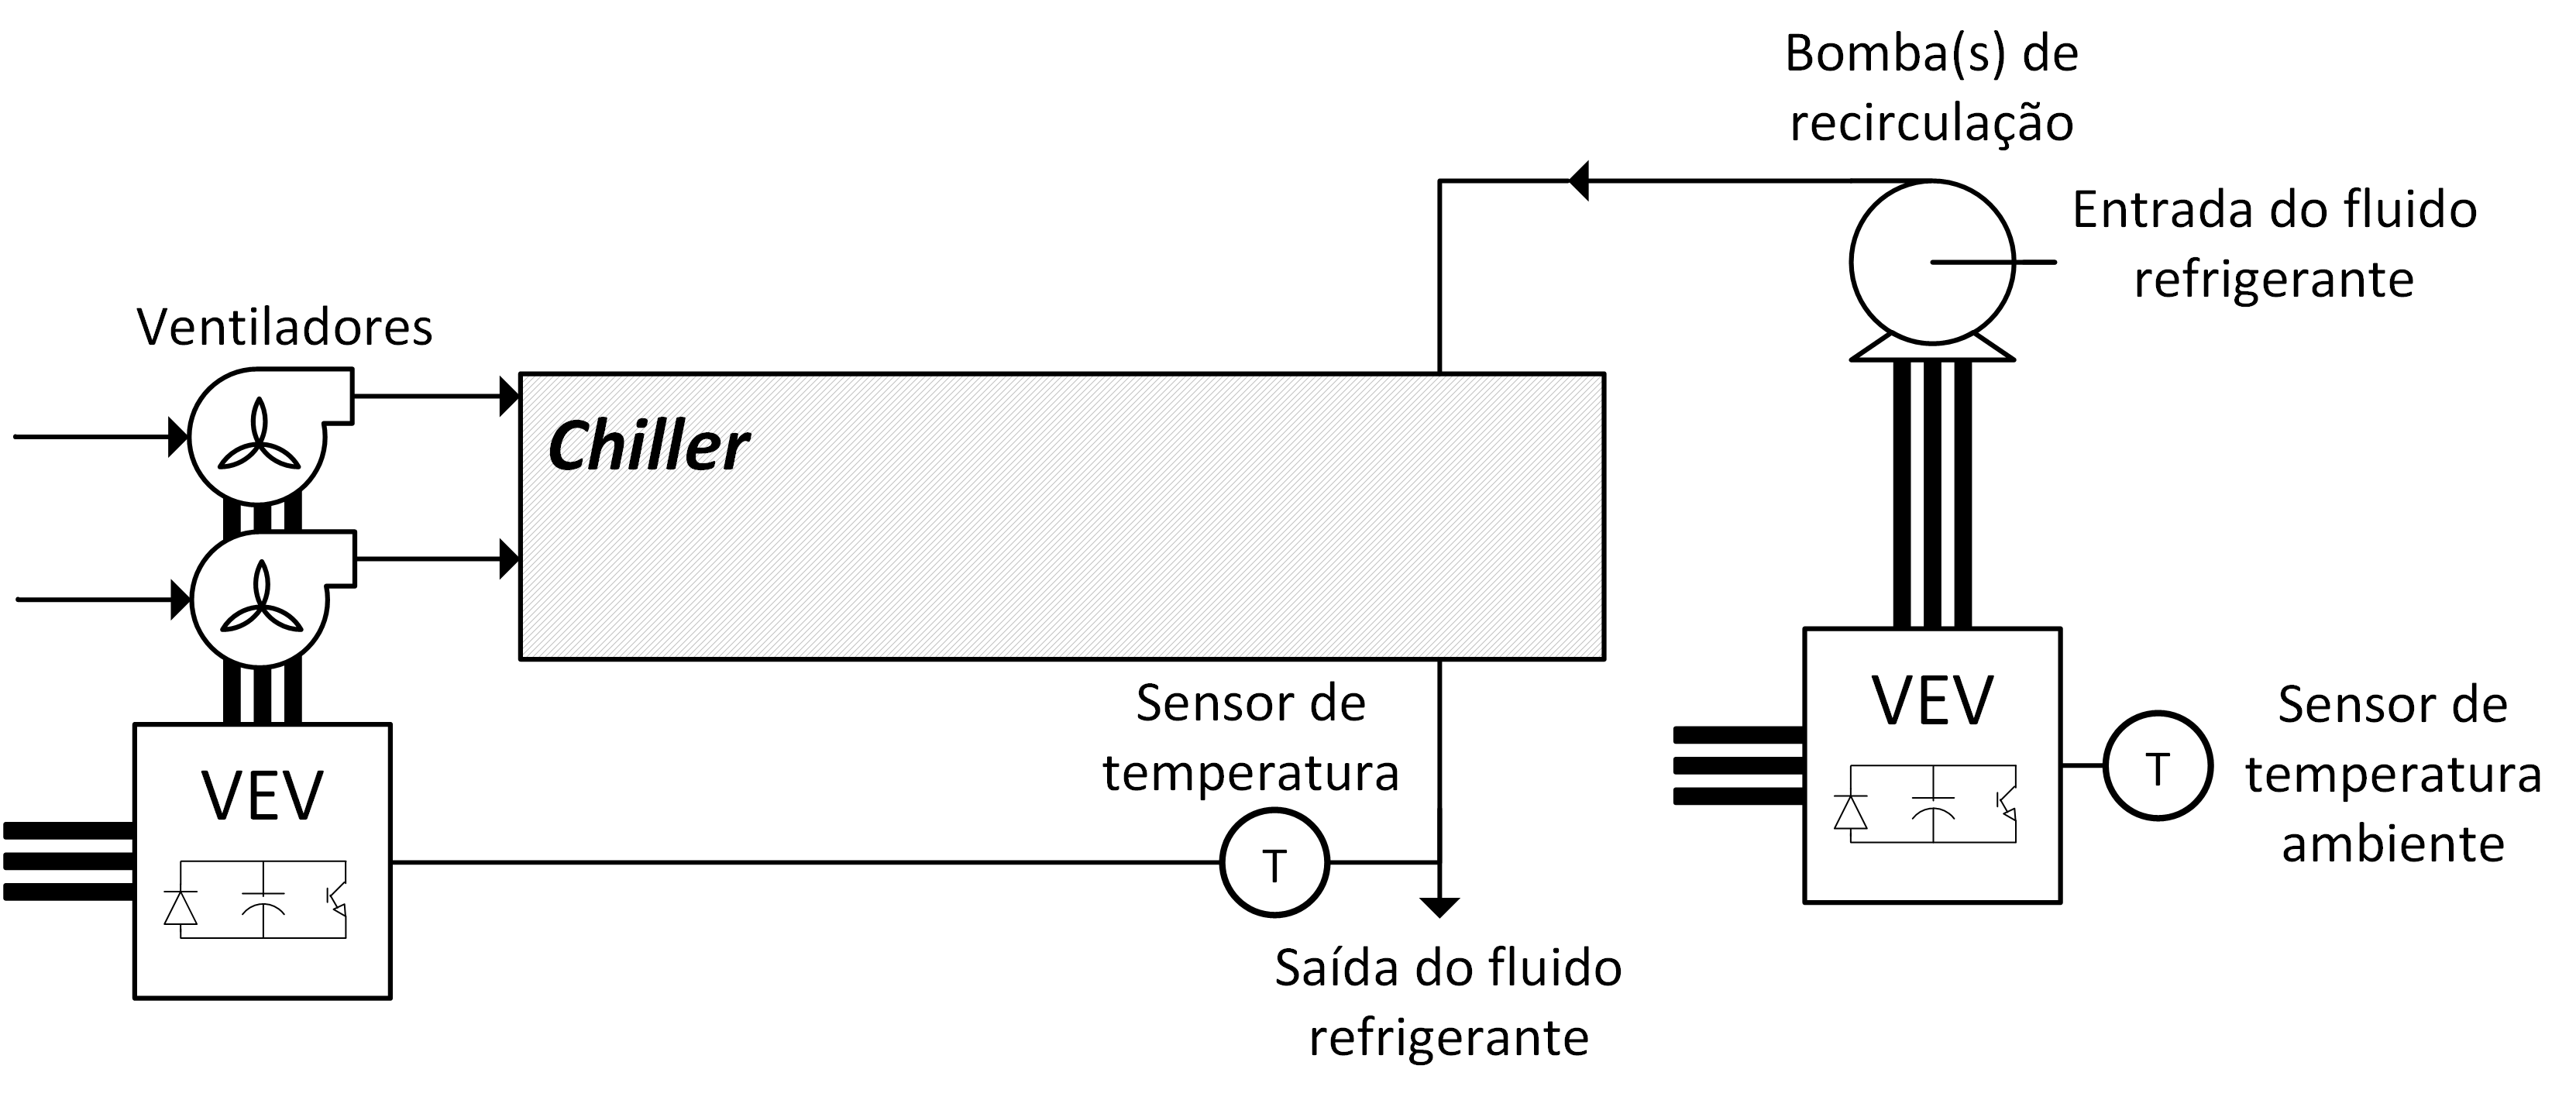 Figura 3.9 – Exemplo da aplicação de VEV a um sistema de ventilação: chiller com ventiladores e com a bomba de recirculação de fluido refrigerante acoplado a VEV [24]